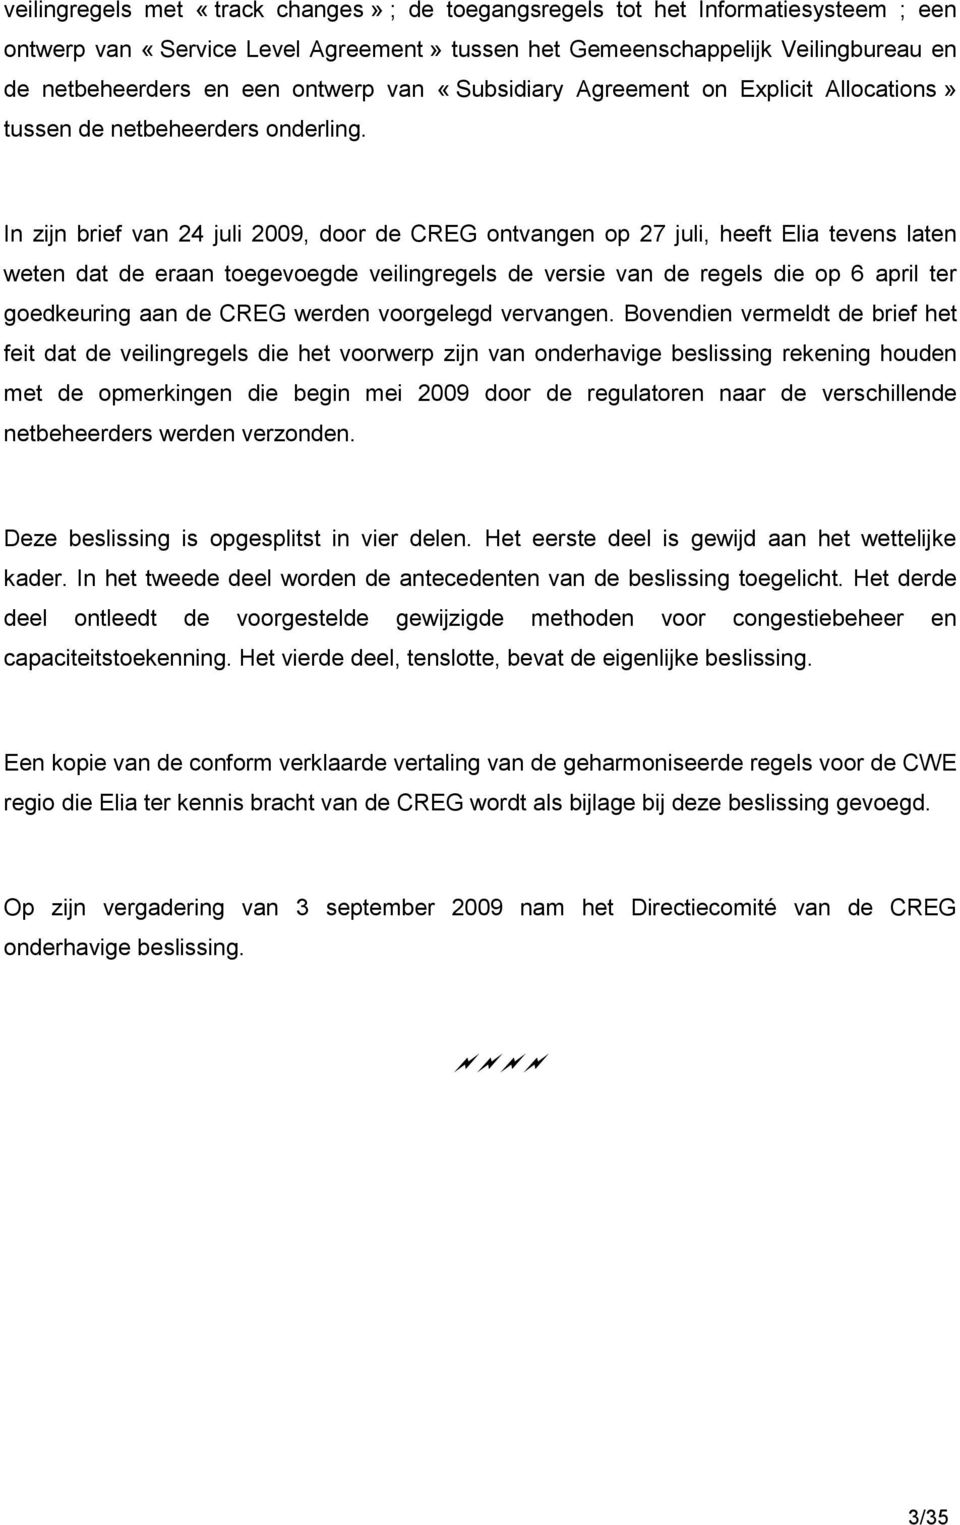 In zijn brief van 24 juli 2009, door de CREG ontvangen op 27 juli, heeft Elia tevens laten weten dat de eraan toegevoegde veilingregels de versie van de regels die op 6 april ter goedkeuring aan de